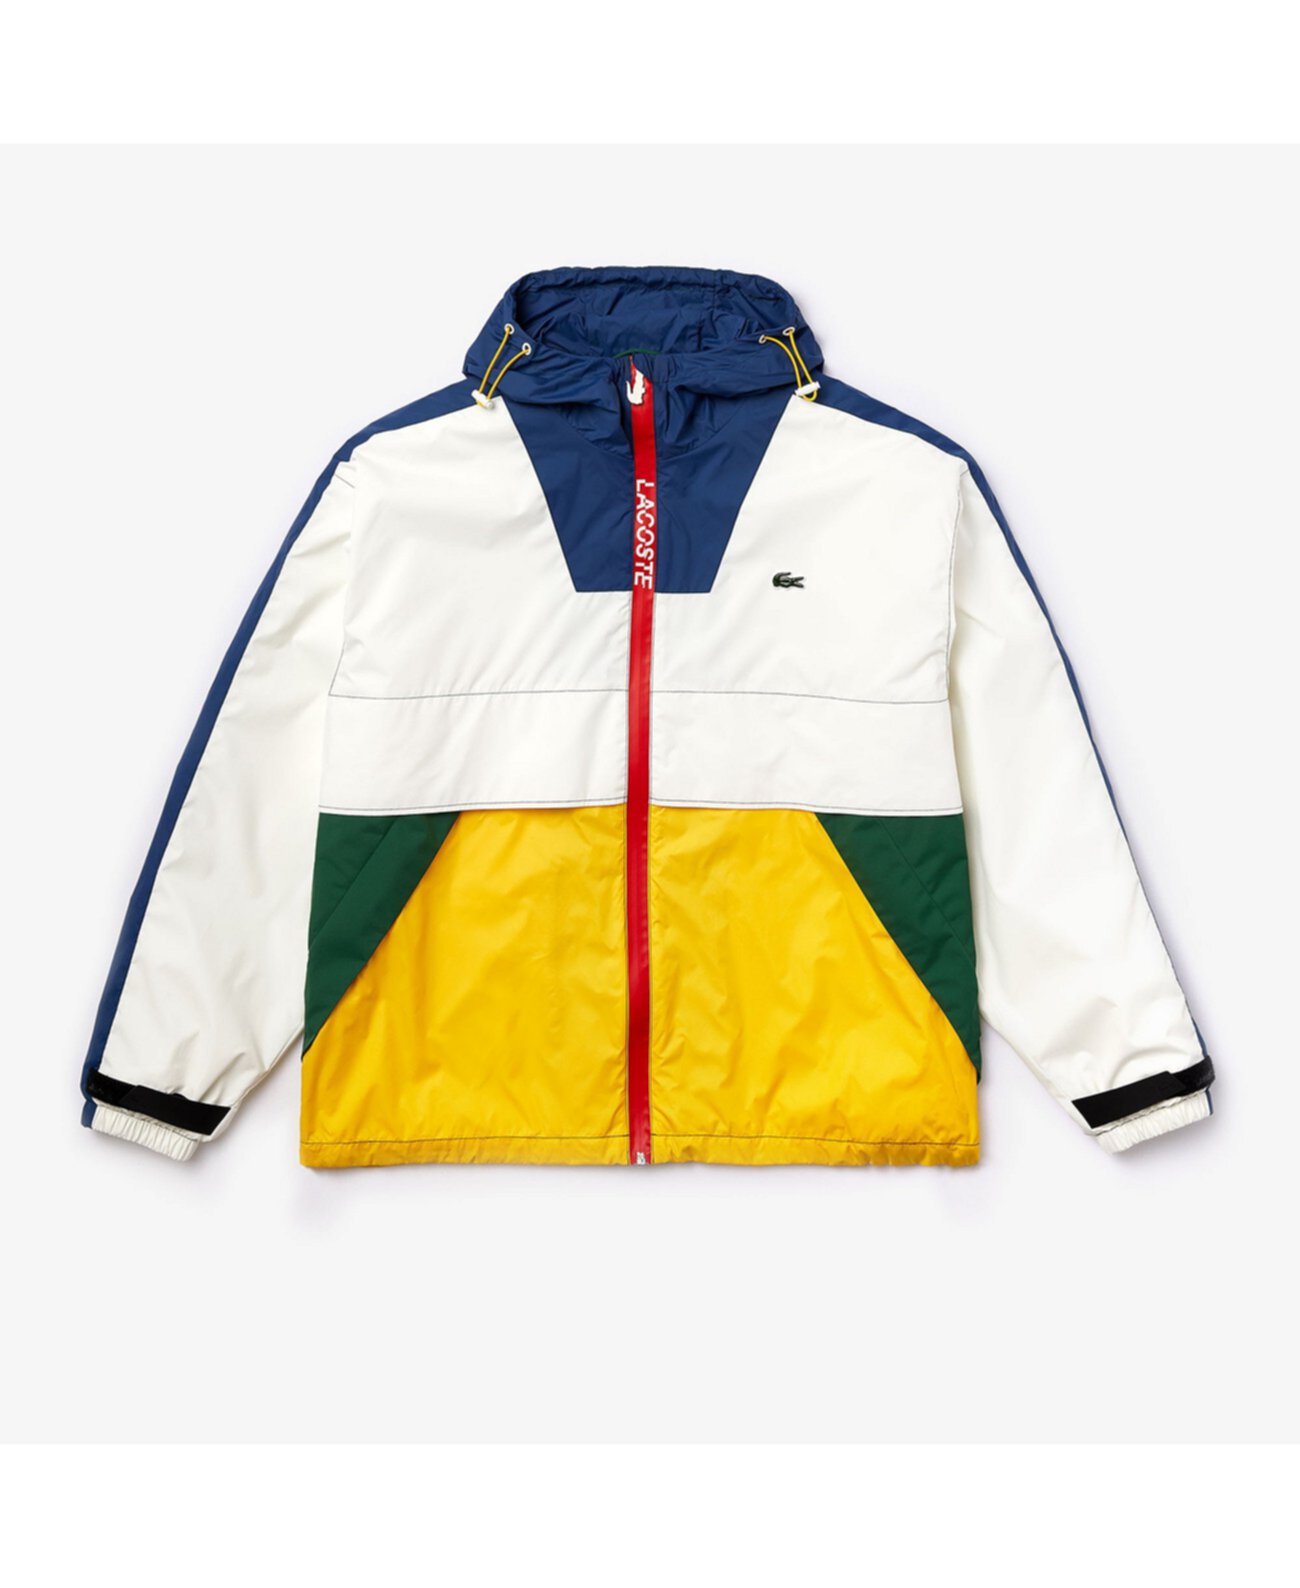 Мужская куртка-парка LIVE с цветными блоками и крупными буквами логотипа Lacoste на спине Lacoste